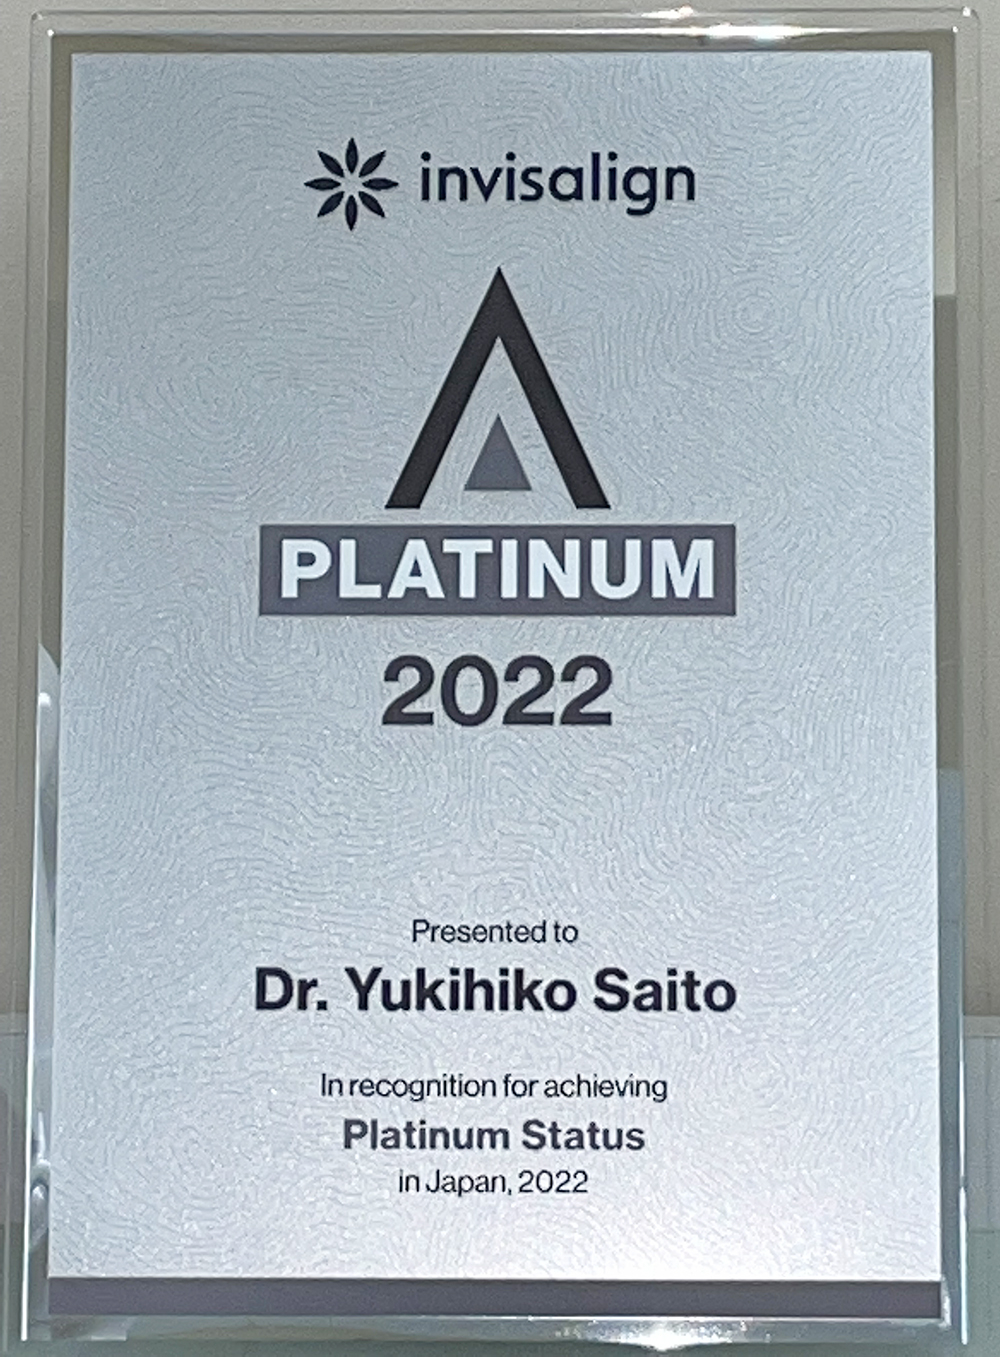 invisalign platinum 2022